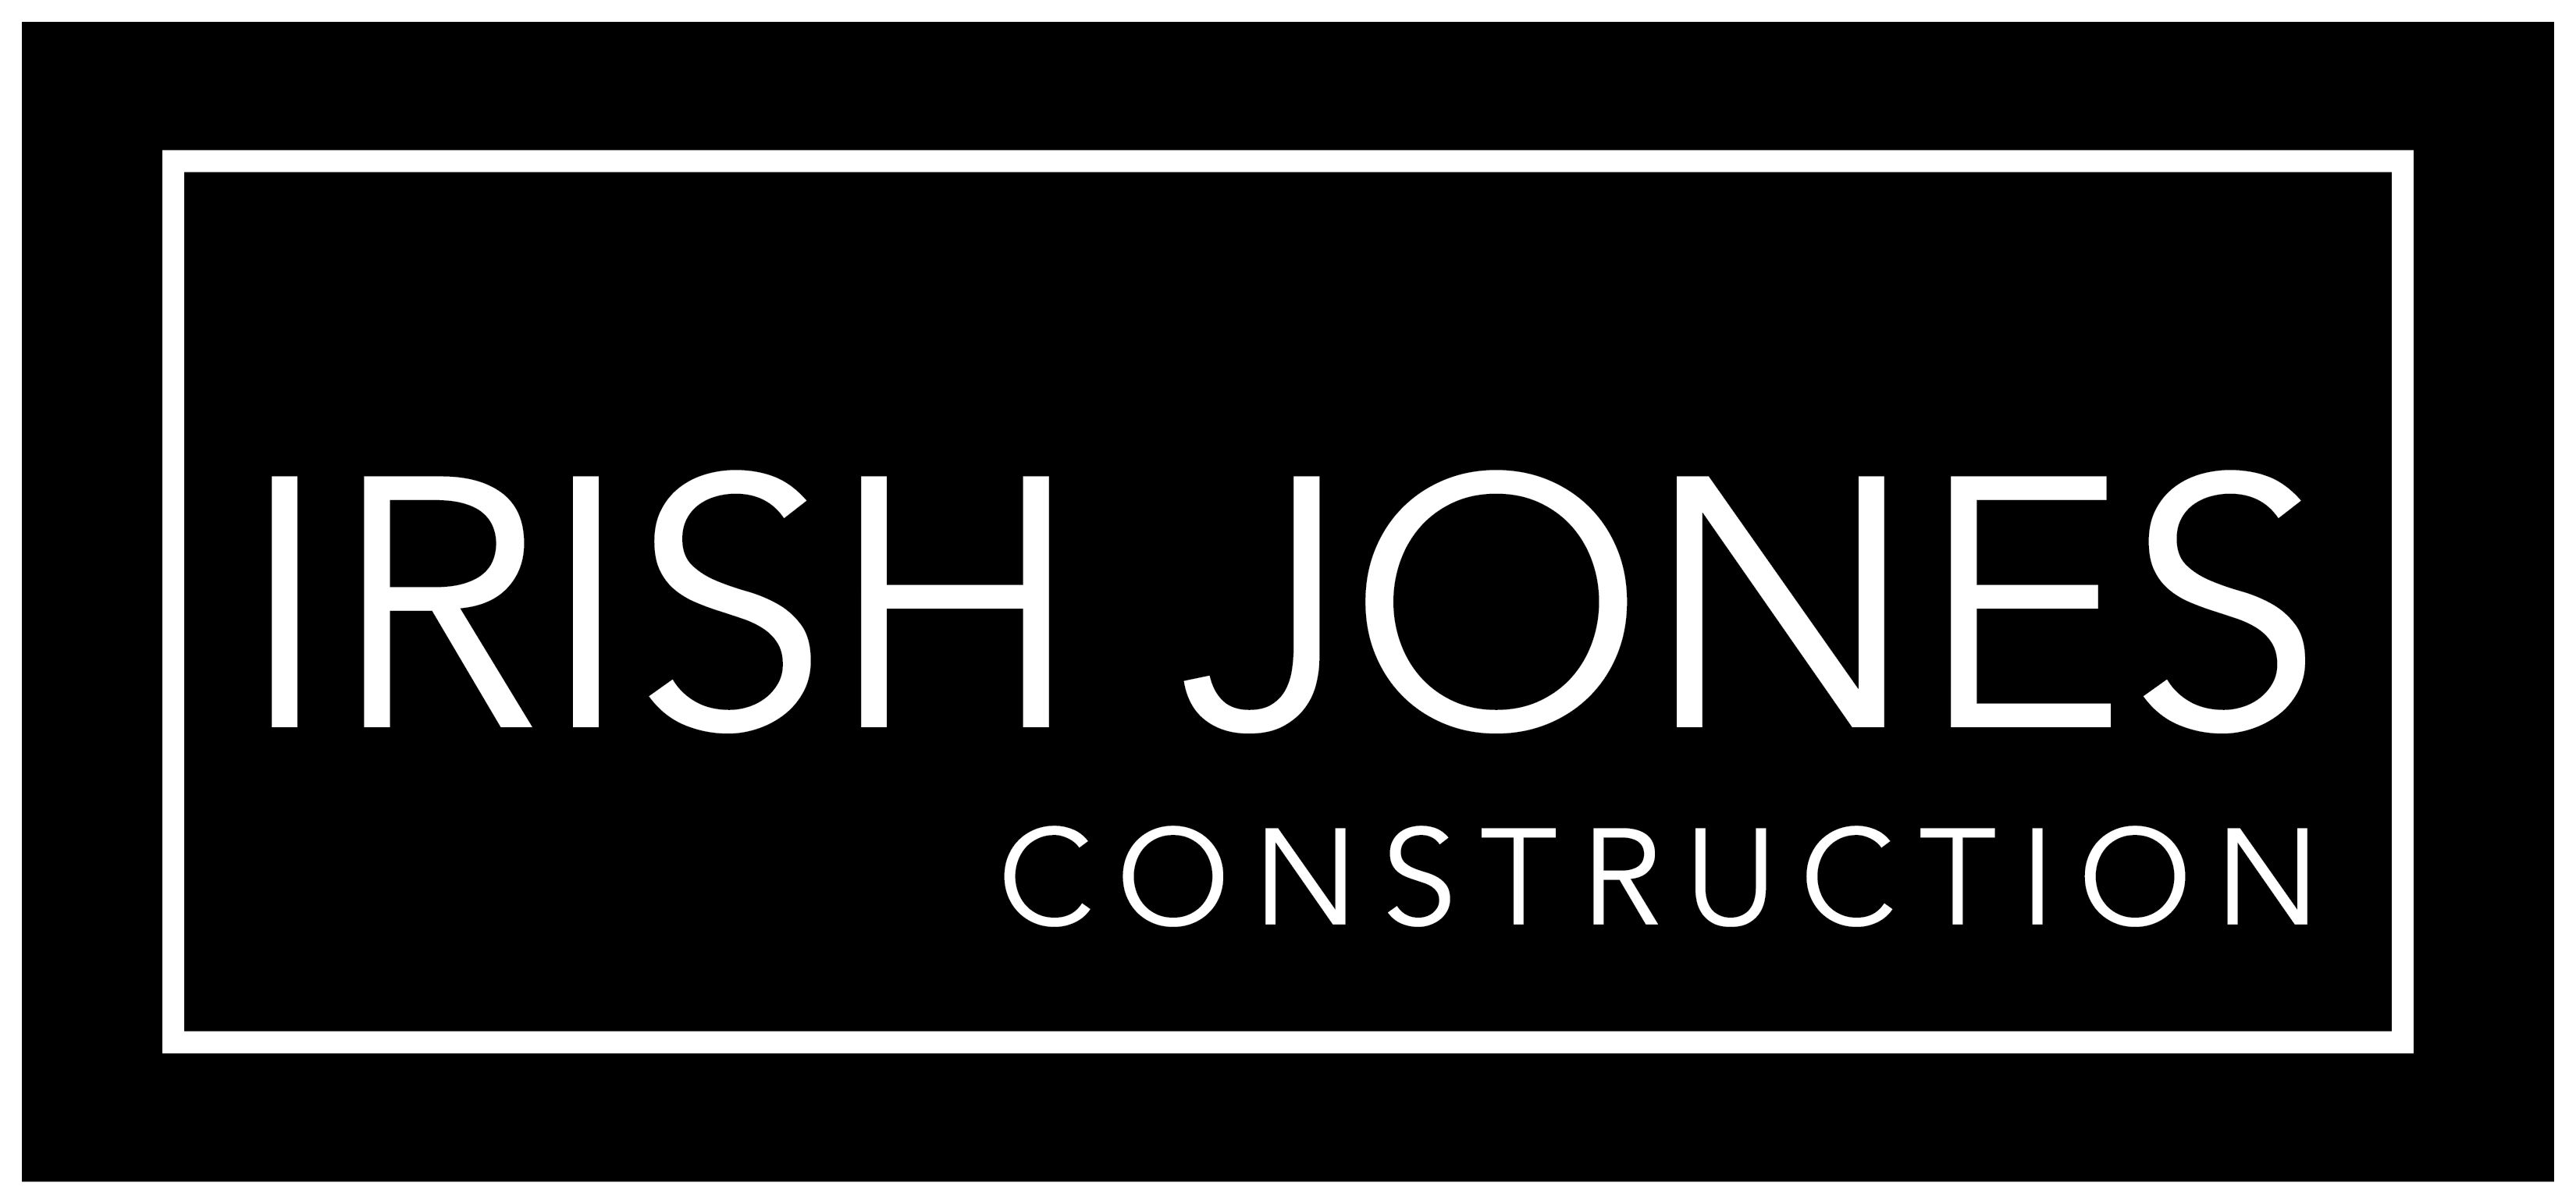 Irish Jones Construction Logo